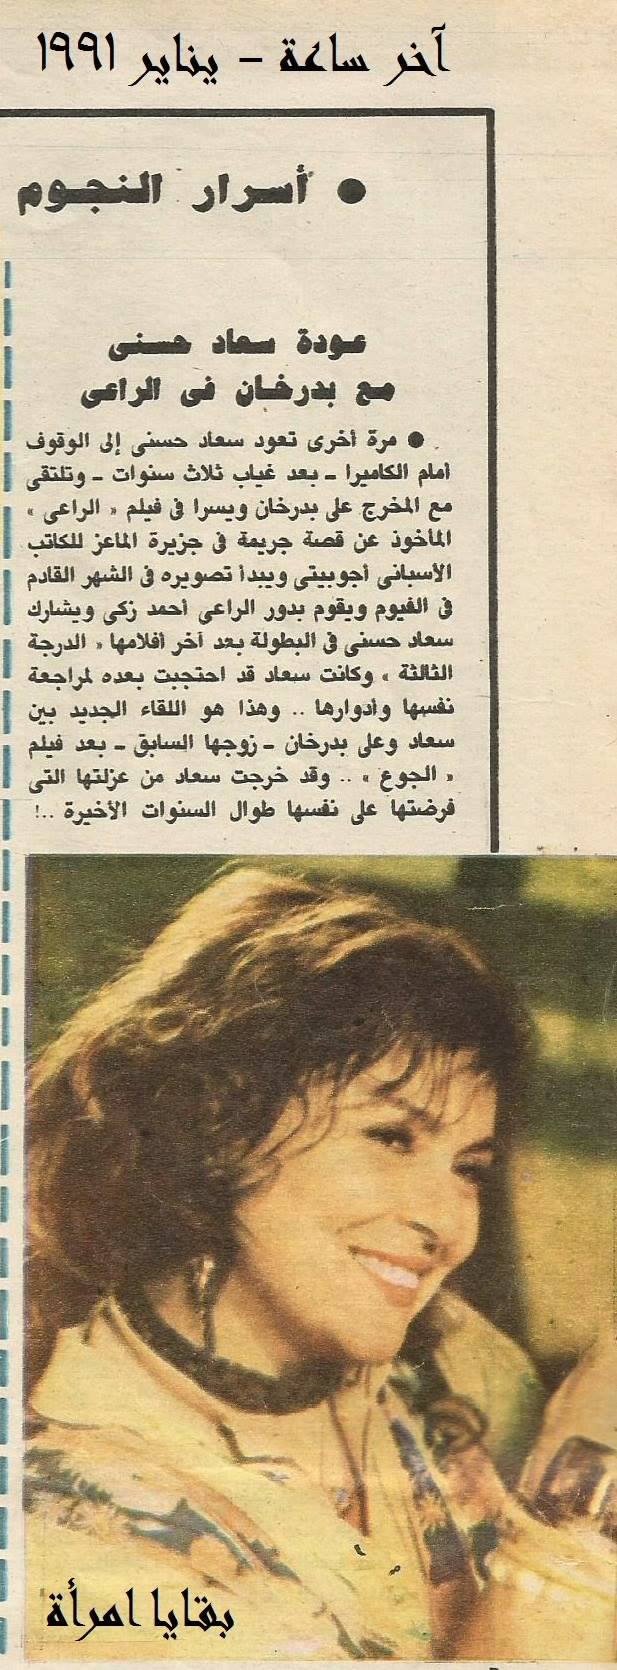 1991 - خبر صحفي : عودة سعاد حسني مع بدرخان في الراعي 1991 م Ico_c_12